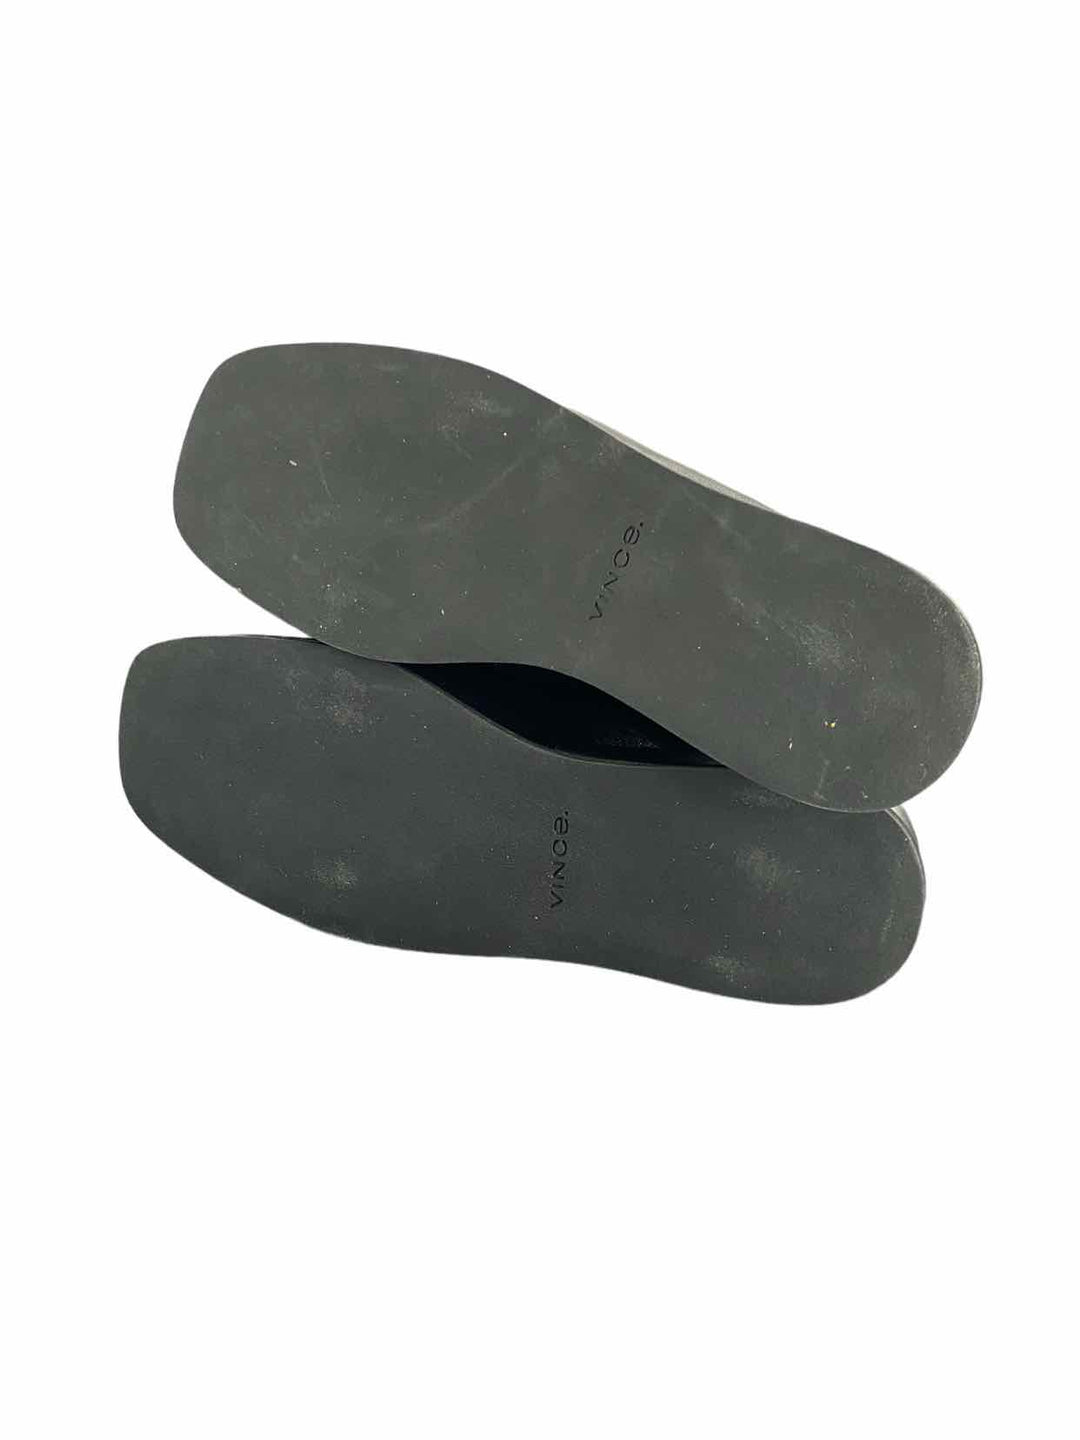 Vince Shoe Size 8 Black Leather Clogs